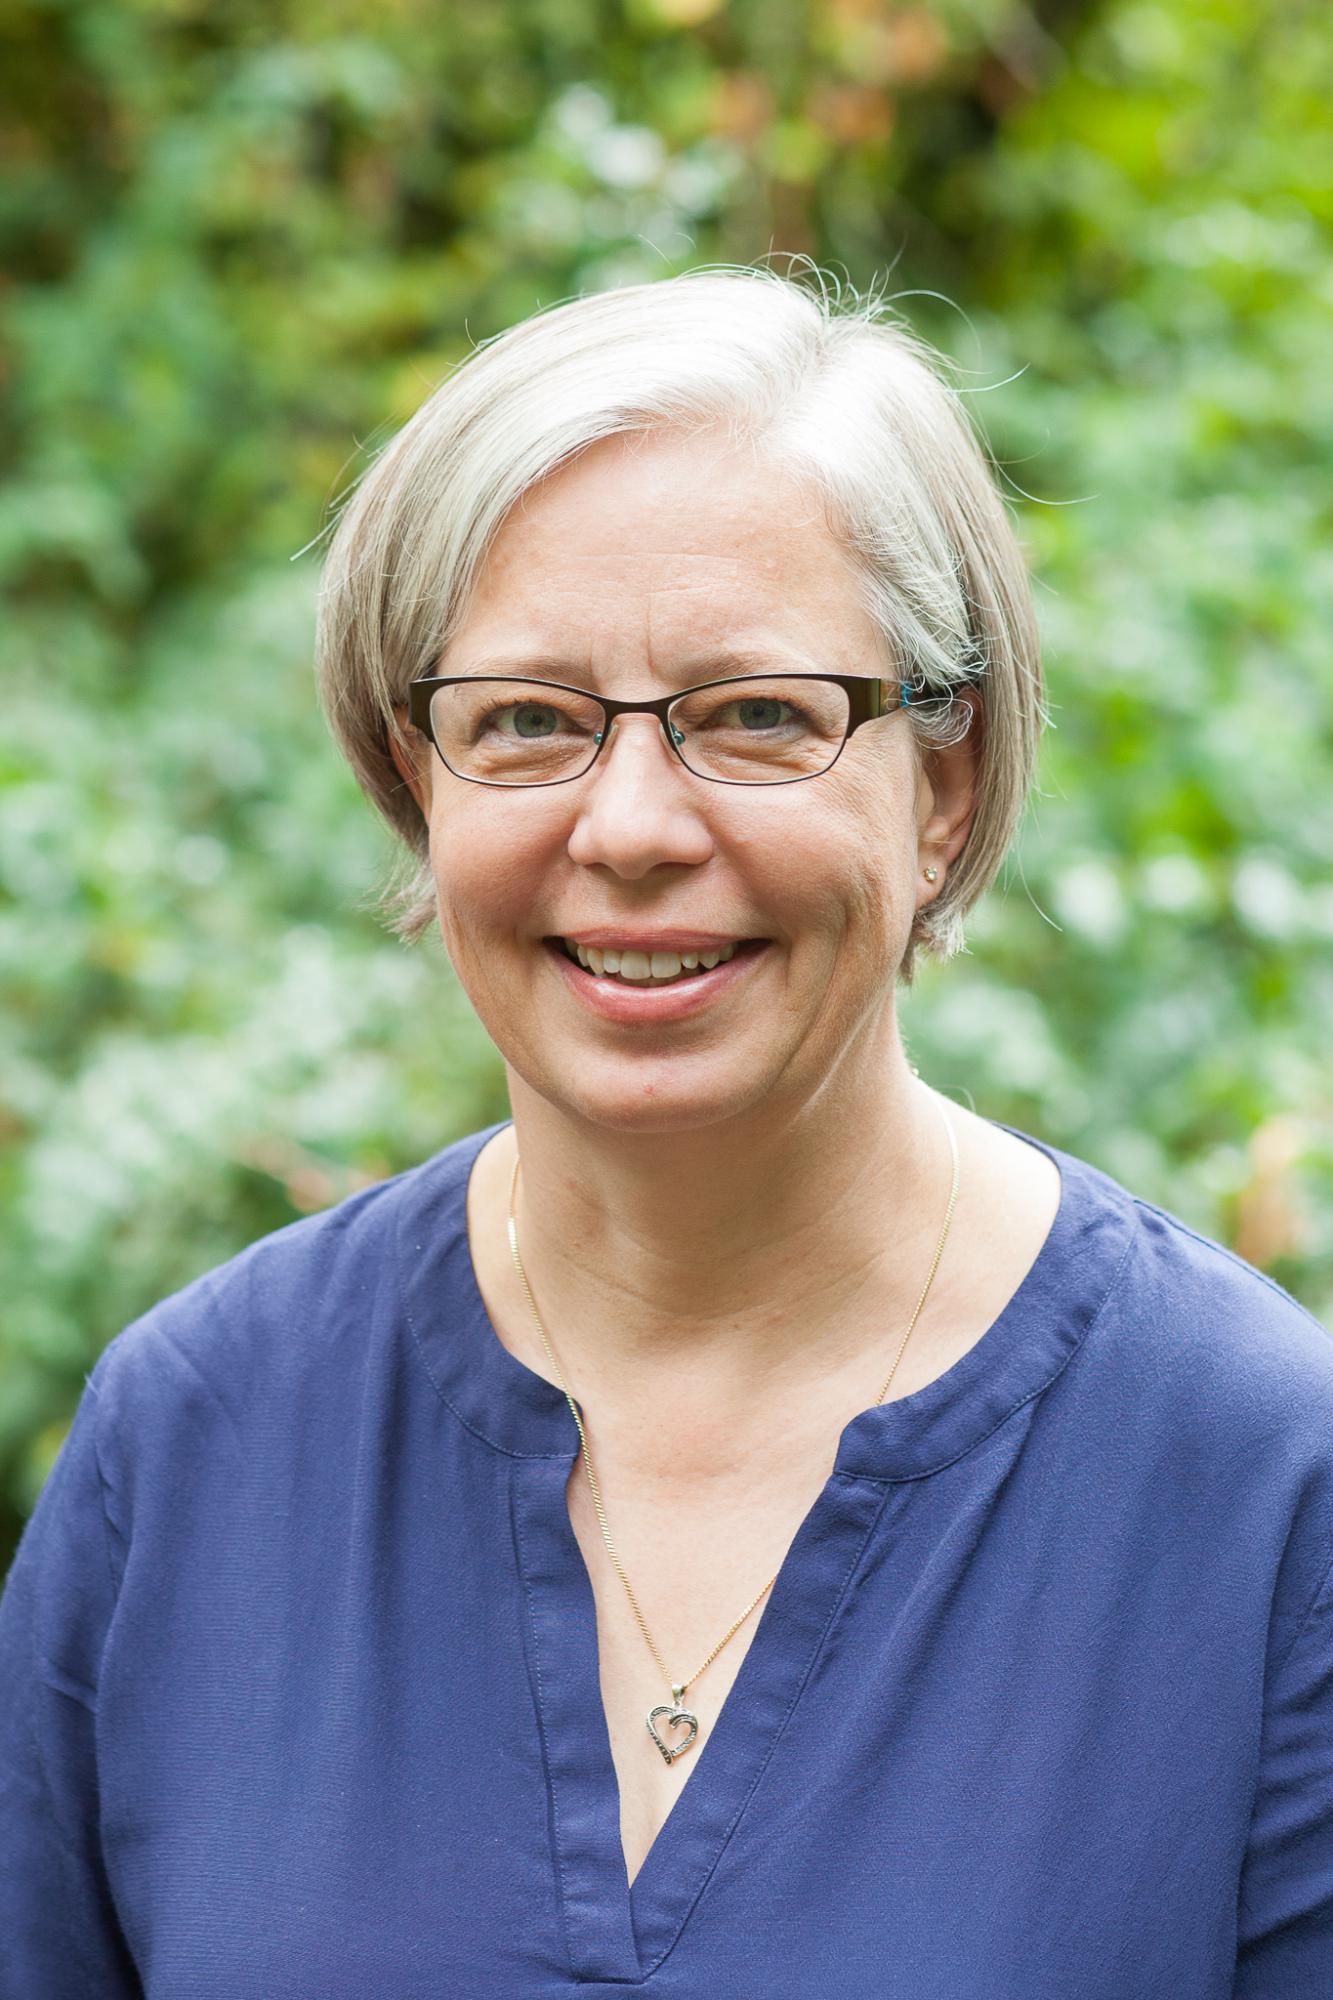 Helen Sharp, CSD Director